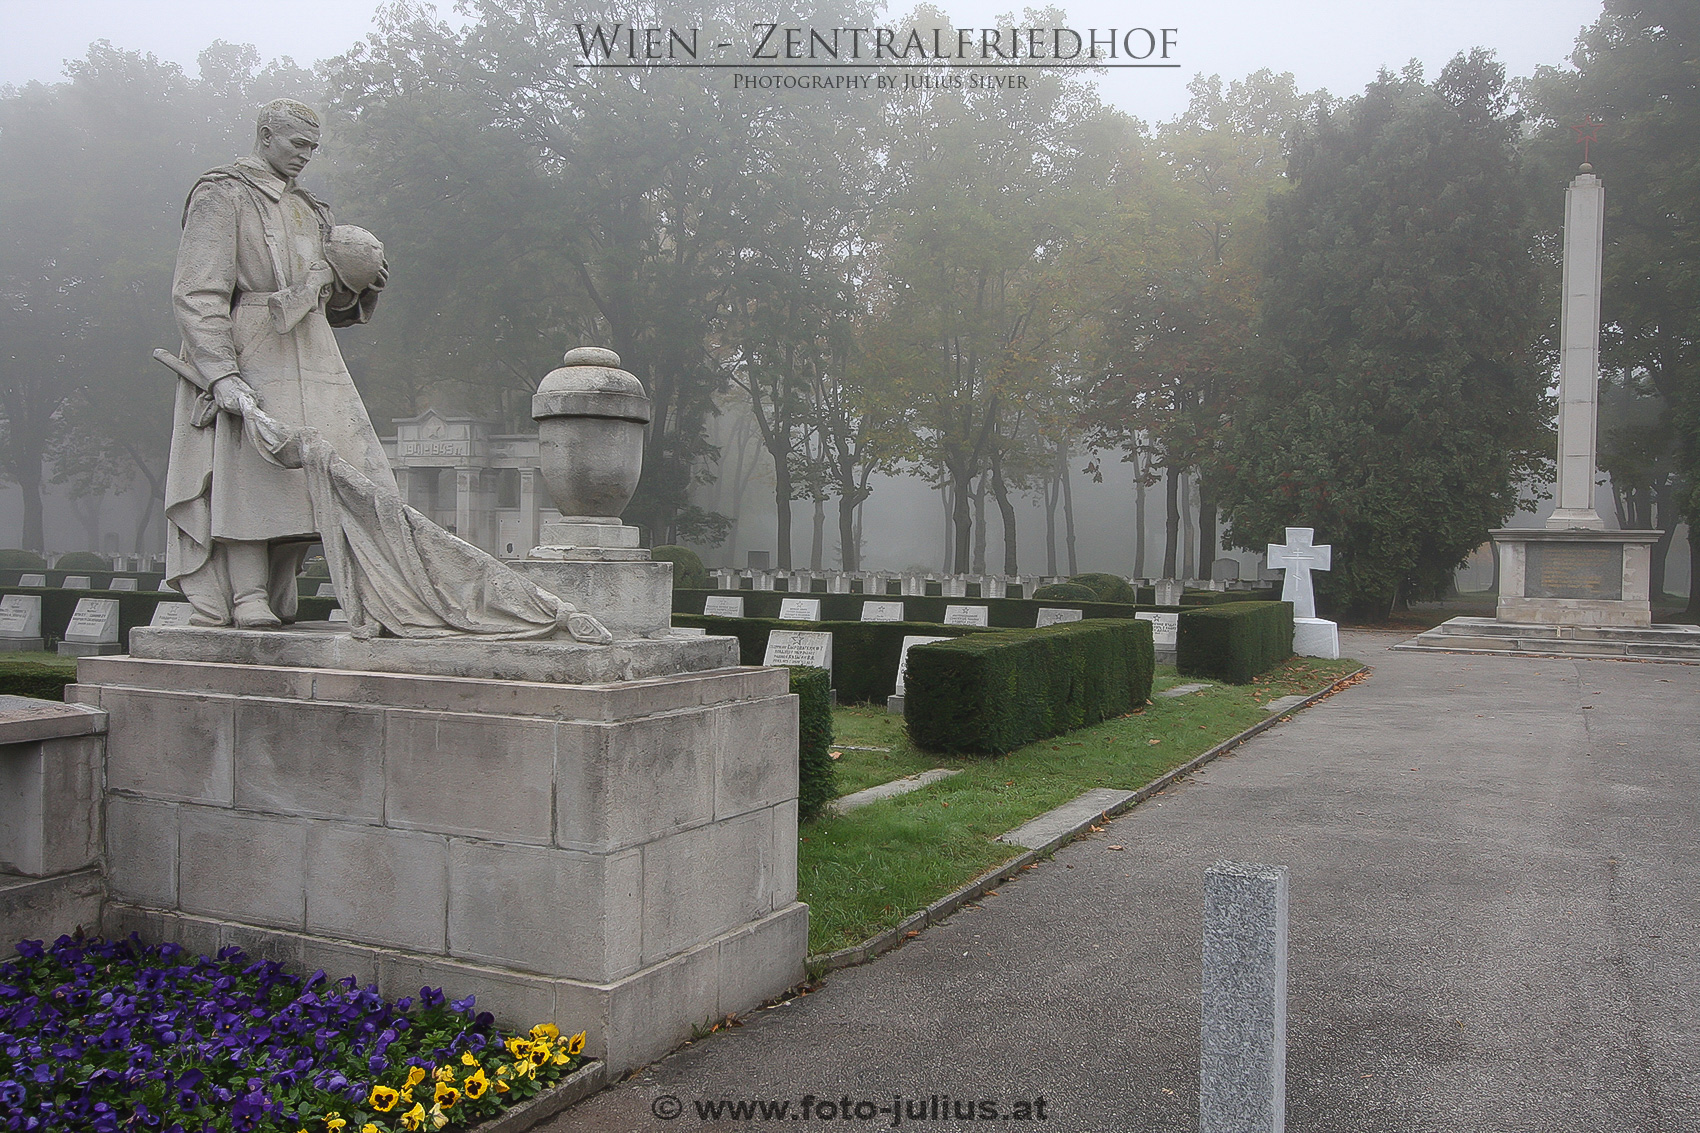 W4014a_Zentralfriedhof_Wien).jpg, 968kB